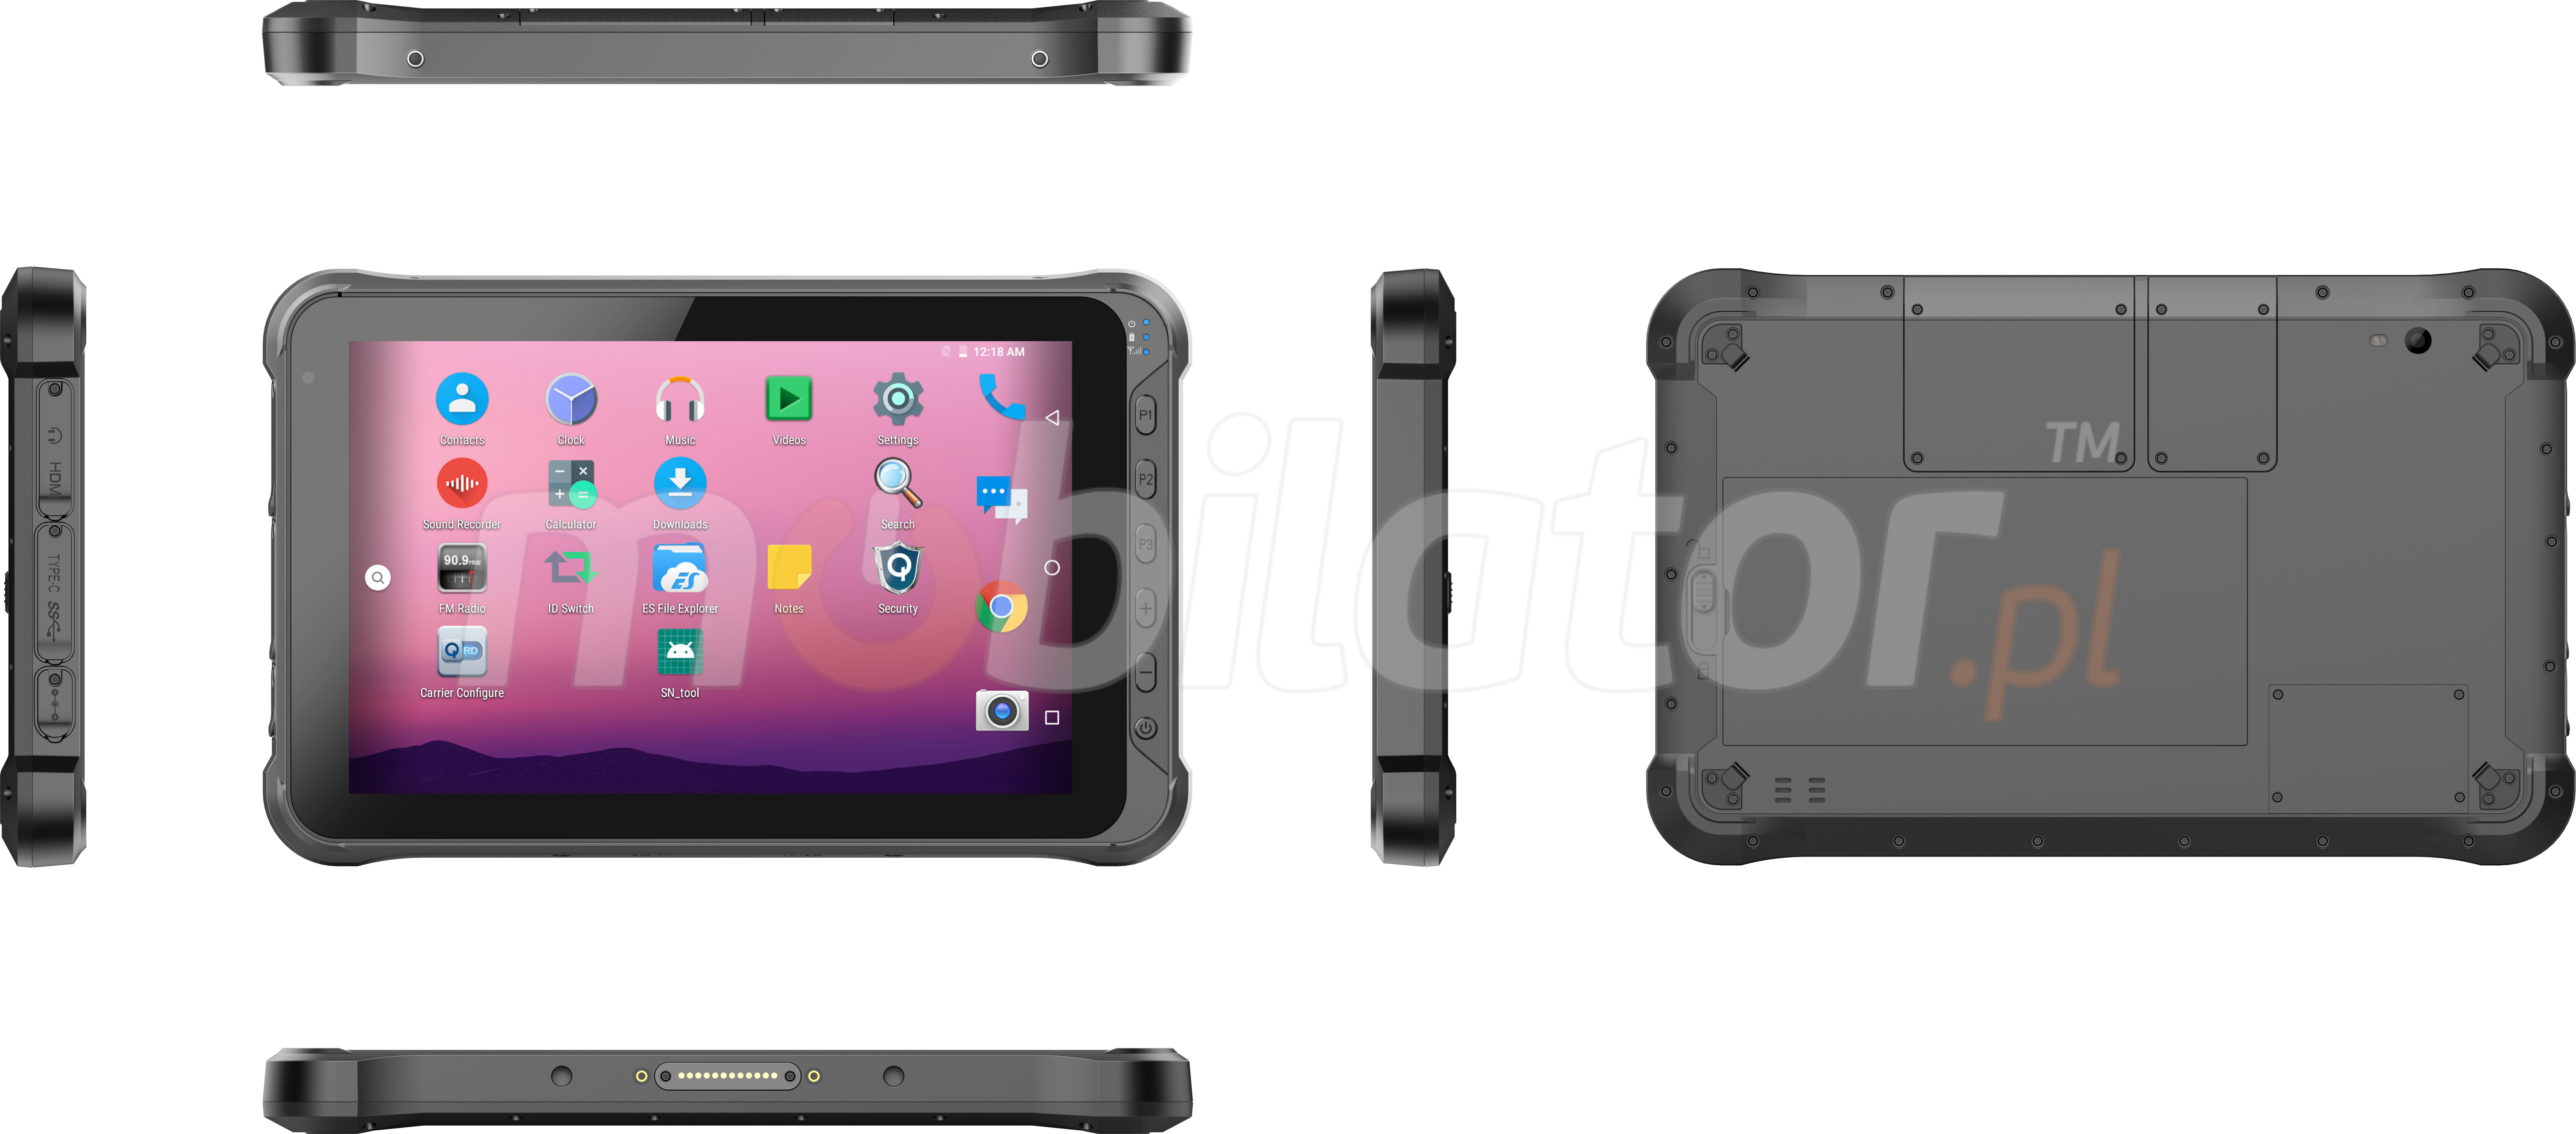 Emdoor Q15P v.3 - Odporny na upadki dziesiciocalowy tablet z Bluetooth 4.1, Androidem 10.0 GMS, 4GB RAM pamici, dyskiem 64GB, czytnikiem kodw 2D N3680 Honeywell, NFC  i 4G 